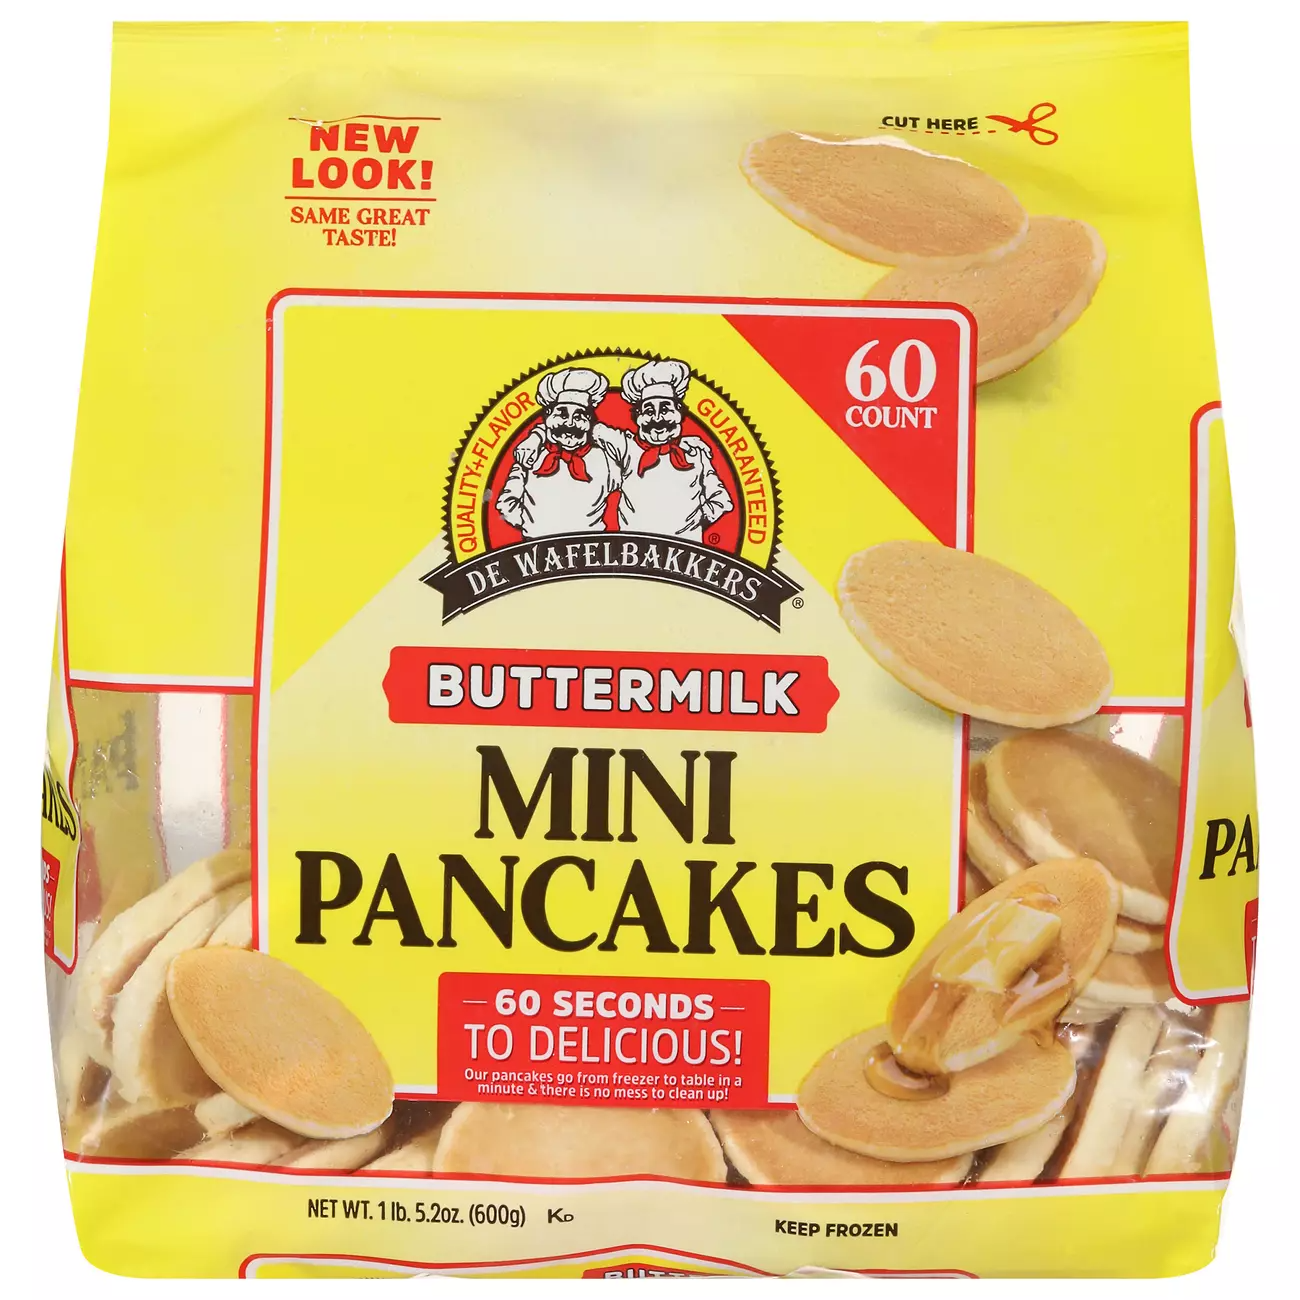 De Wafelbakkers Buttermilk Mini Pancakes 8 units per case 21.2 oz